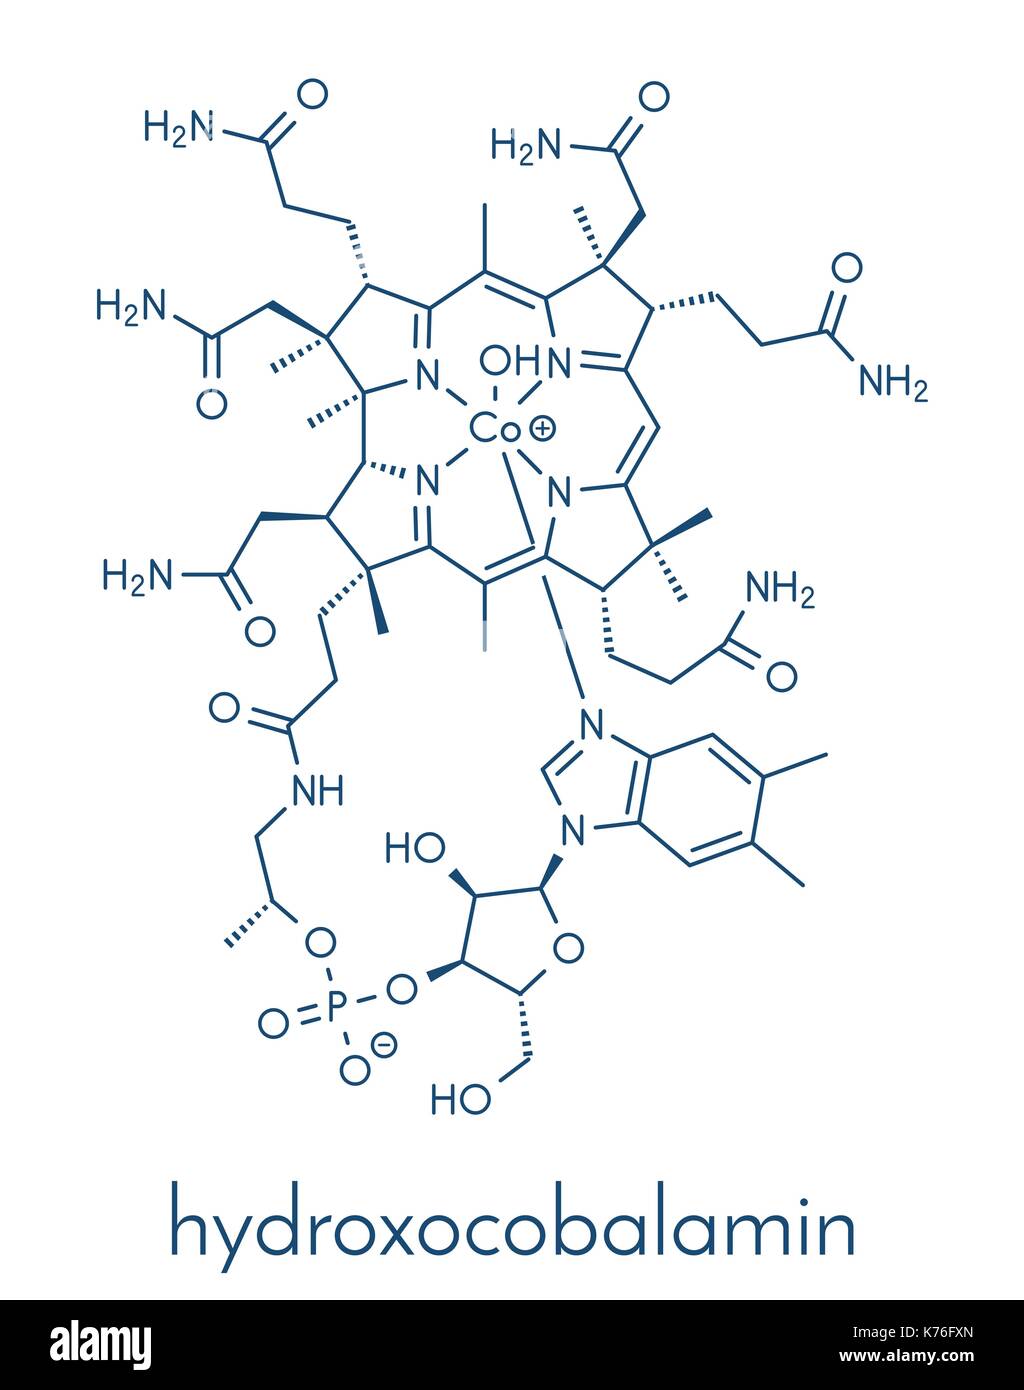 L'hydroxocobalamine la vitamine B12. molécule thérapeutique souvent donnée en cas de carence en b12. formule topologique. Illustration de Vecteur